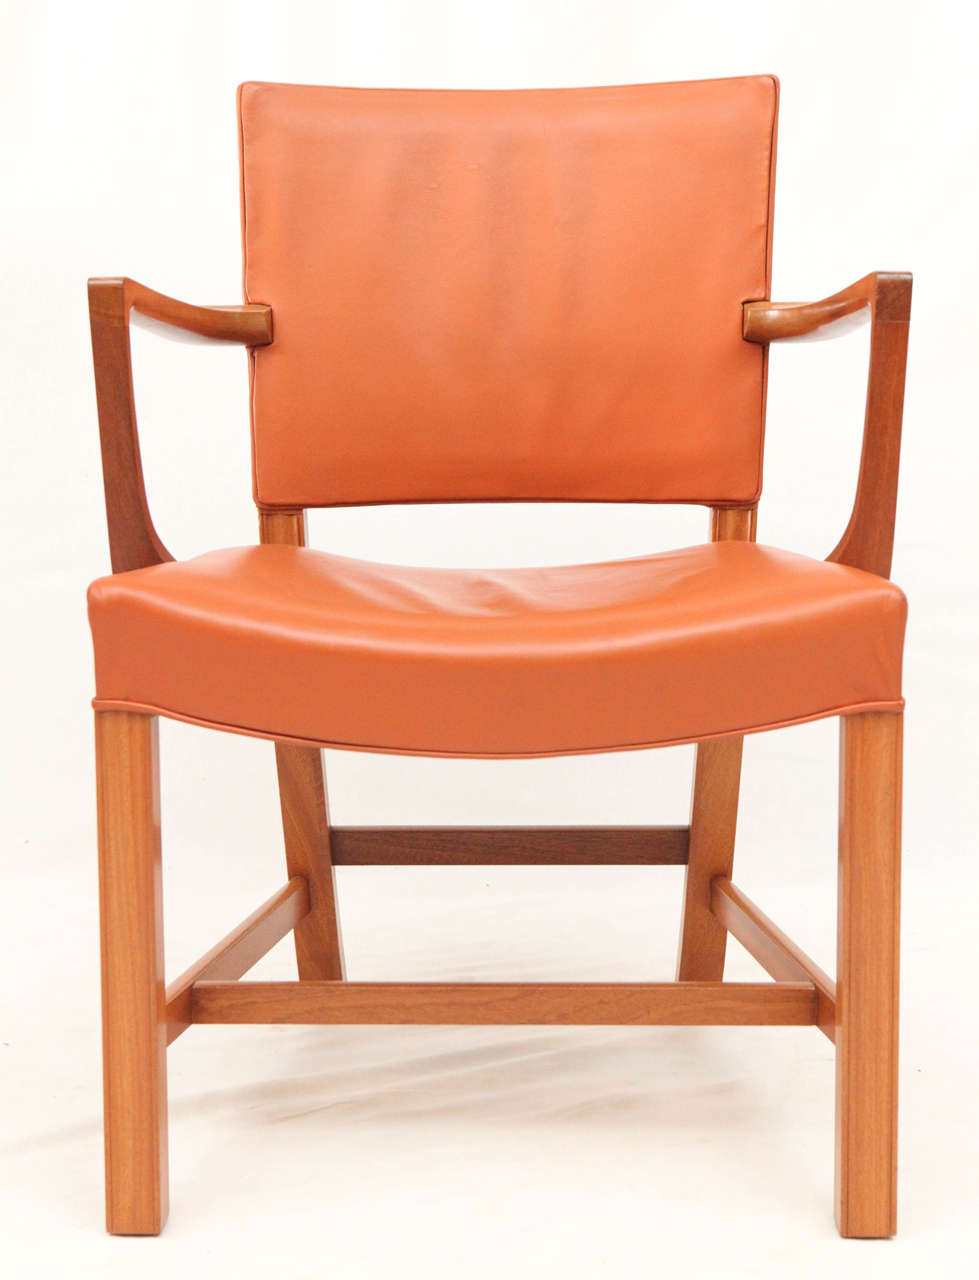 Ensemble de huit fauteuils Kaare Klint conçus en 1927 et produits par Rud Rasmussen.  Magasin anciennement connu sous le nom de ARTFUL DODGER INC